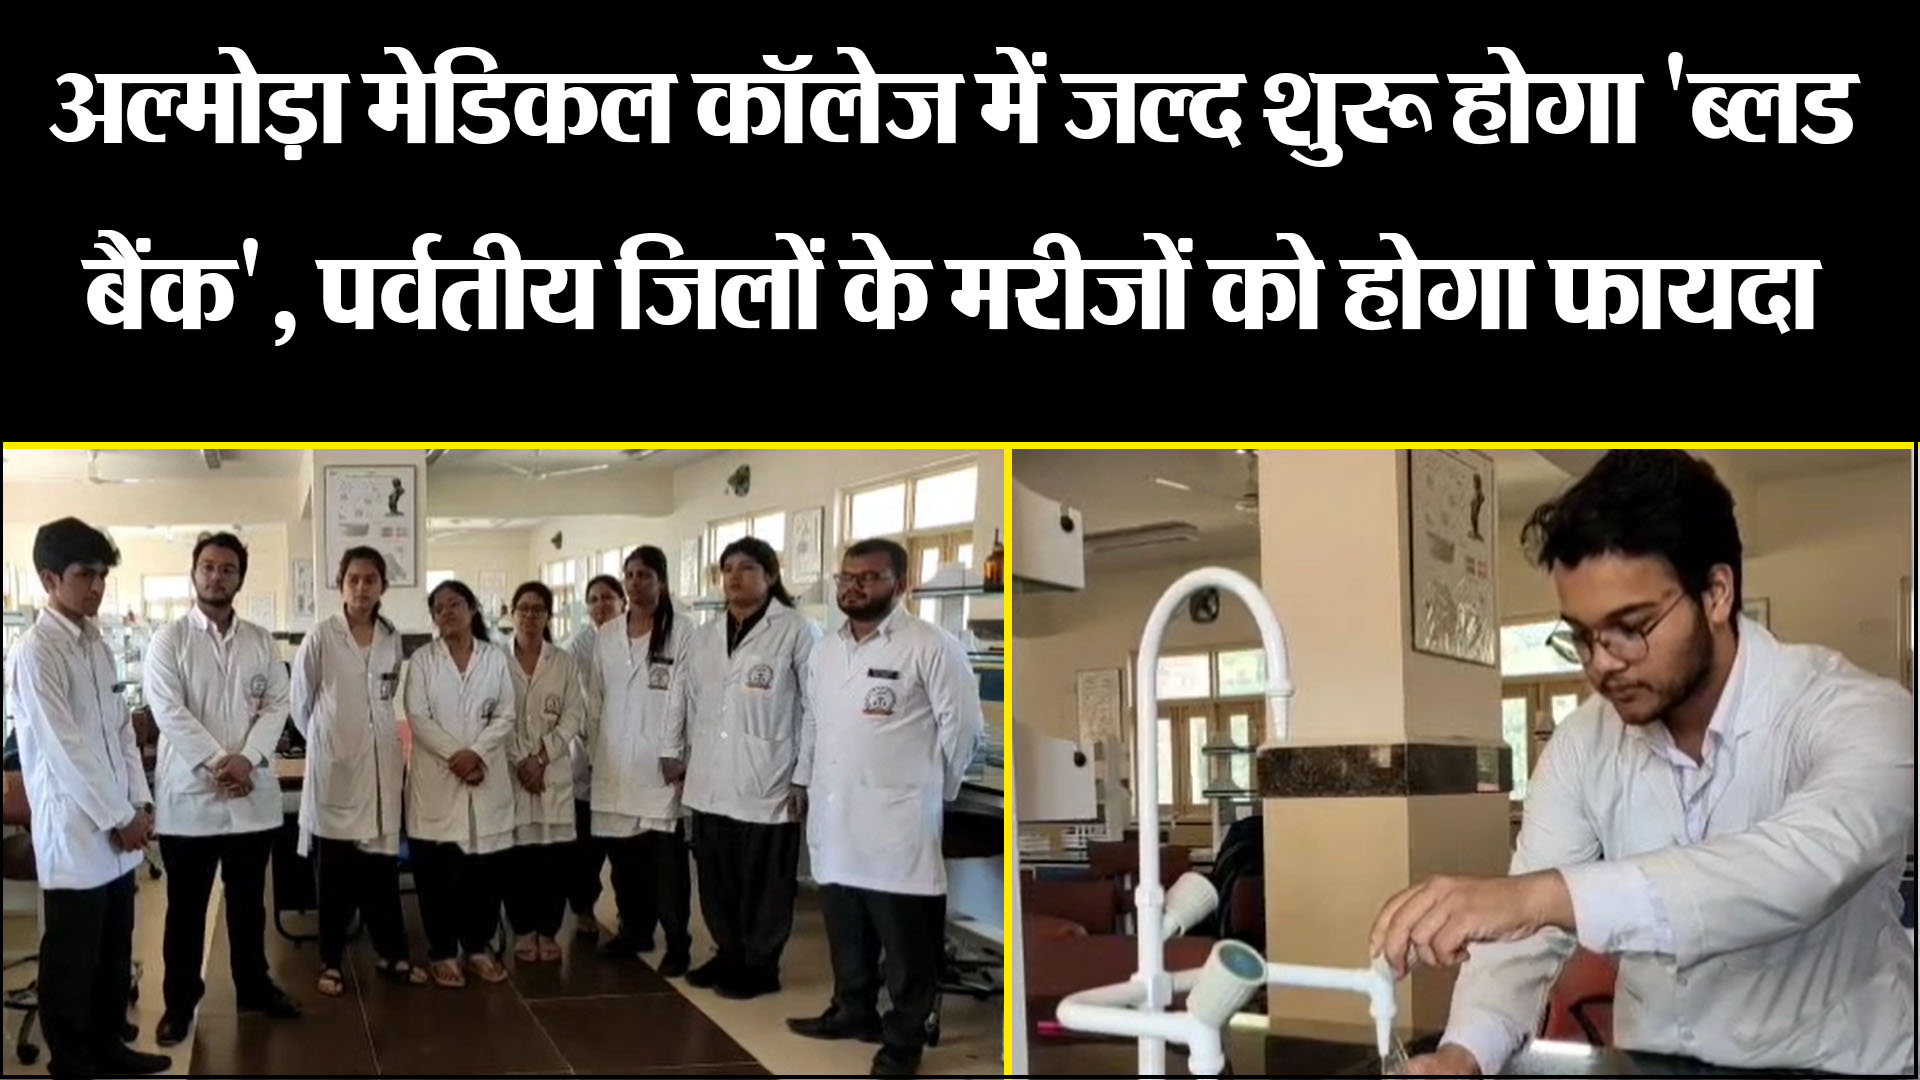 अल्मोड़ा मेडिकल कॉलेज में जल्द शुरू होगा 'ब्लड बैंक', पर्वतीय जिलों के मरीजों को होगा फायदा